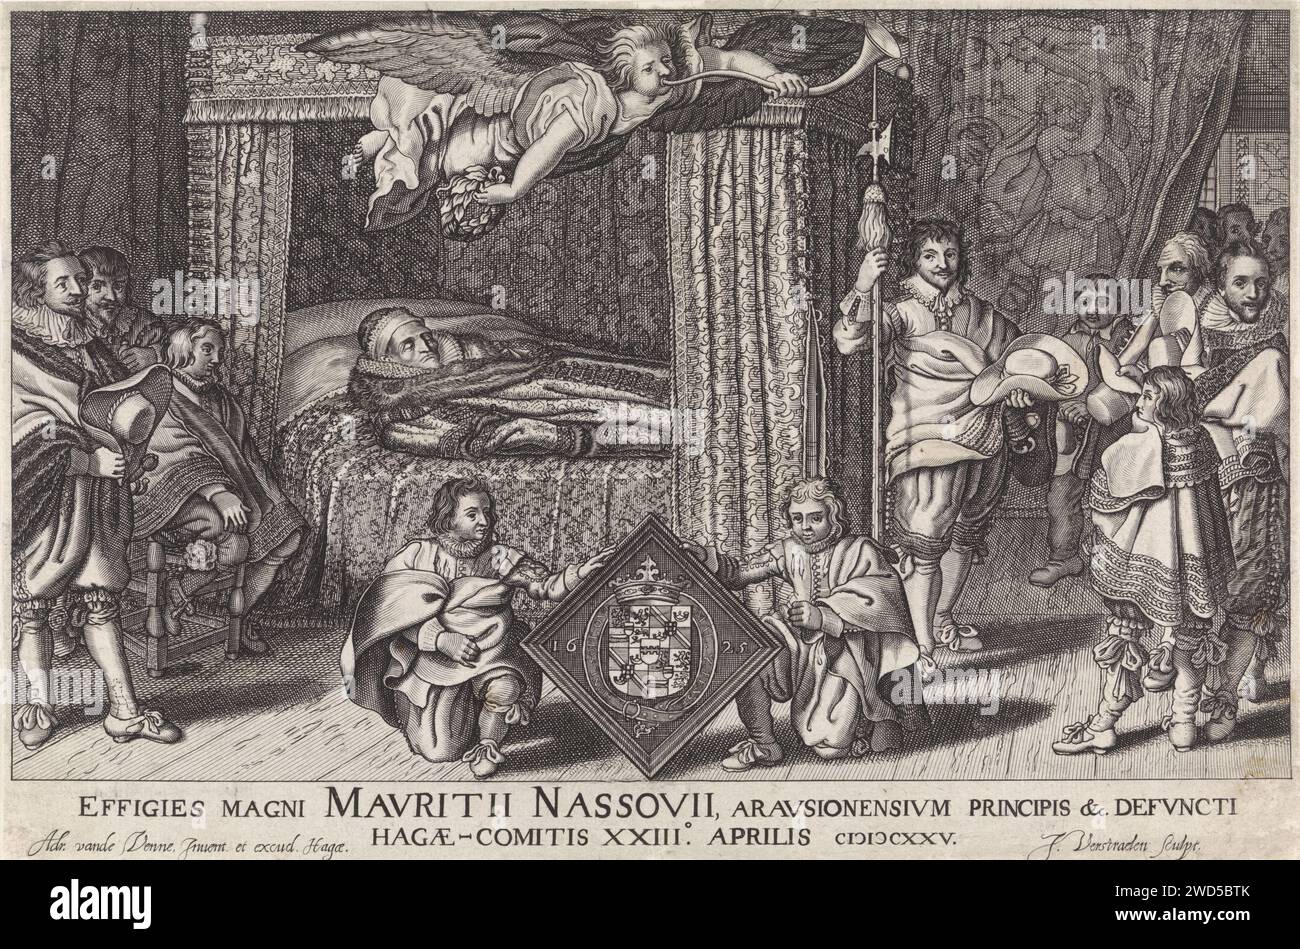 Paradebett von Prinz Maurits, 1625, Jan Hendriksz. Verstraelen, nach Adriaen Pietersz van de Venne, 1625 Druck Paradebett von Prinz Maurits, starb am 23. April 1625. Der Prinz befindet sich auf dem Bett in einem Tabbest. In der Luft weht der Ruhm auf eine Trompete. Um das Bett herum Familie und Freunde, im Vordergrund zwei Jungen mit der Rüstung des Prinzen. Der Haager Papierstich liegt im Bundesstaat Haag Stockfoto